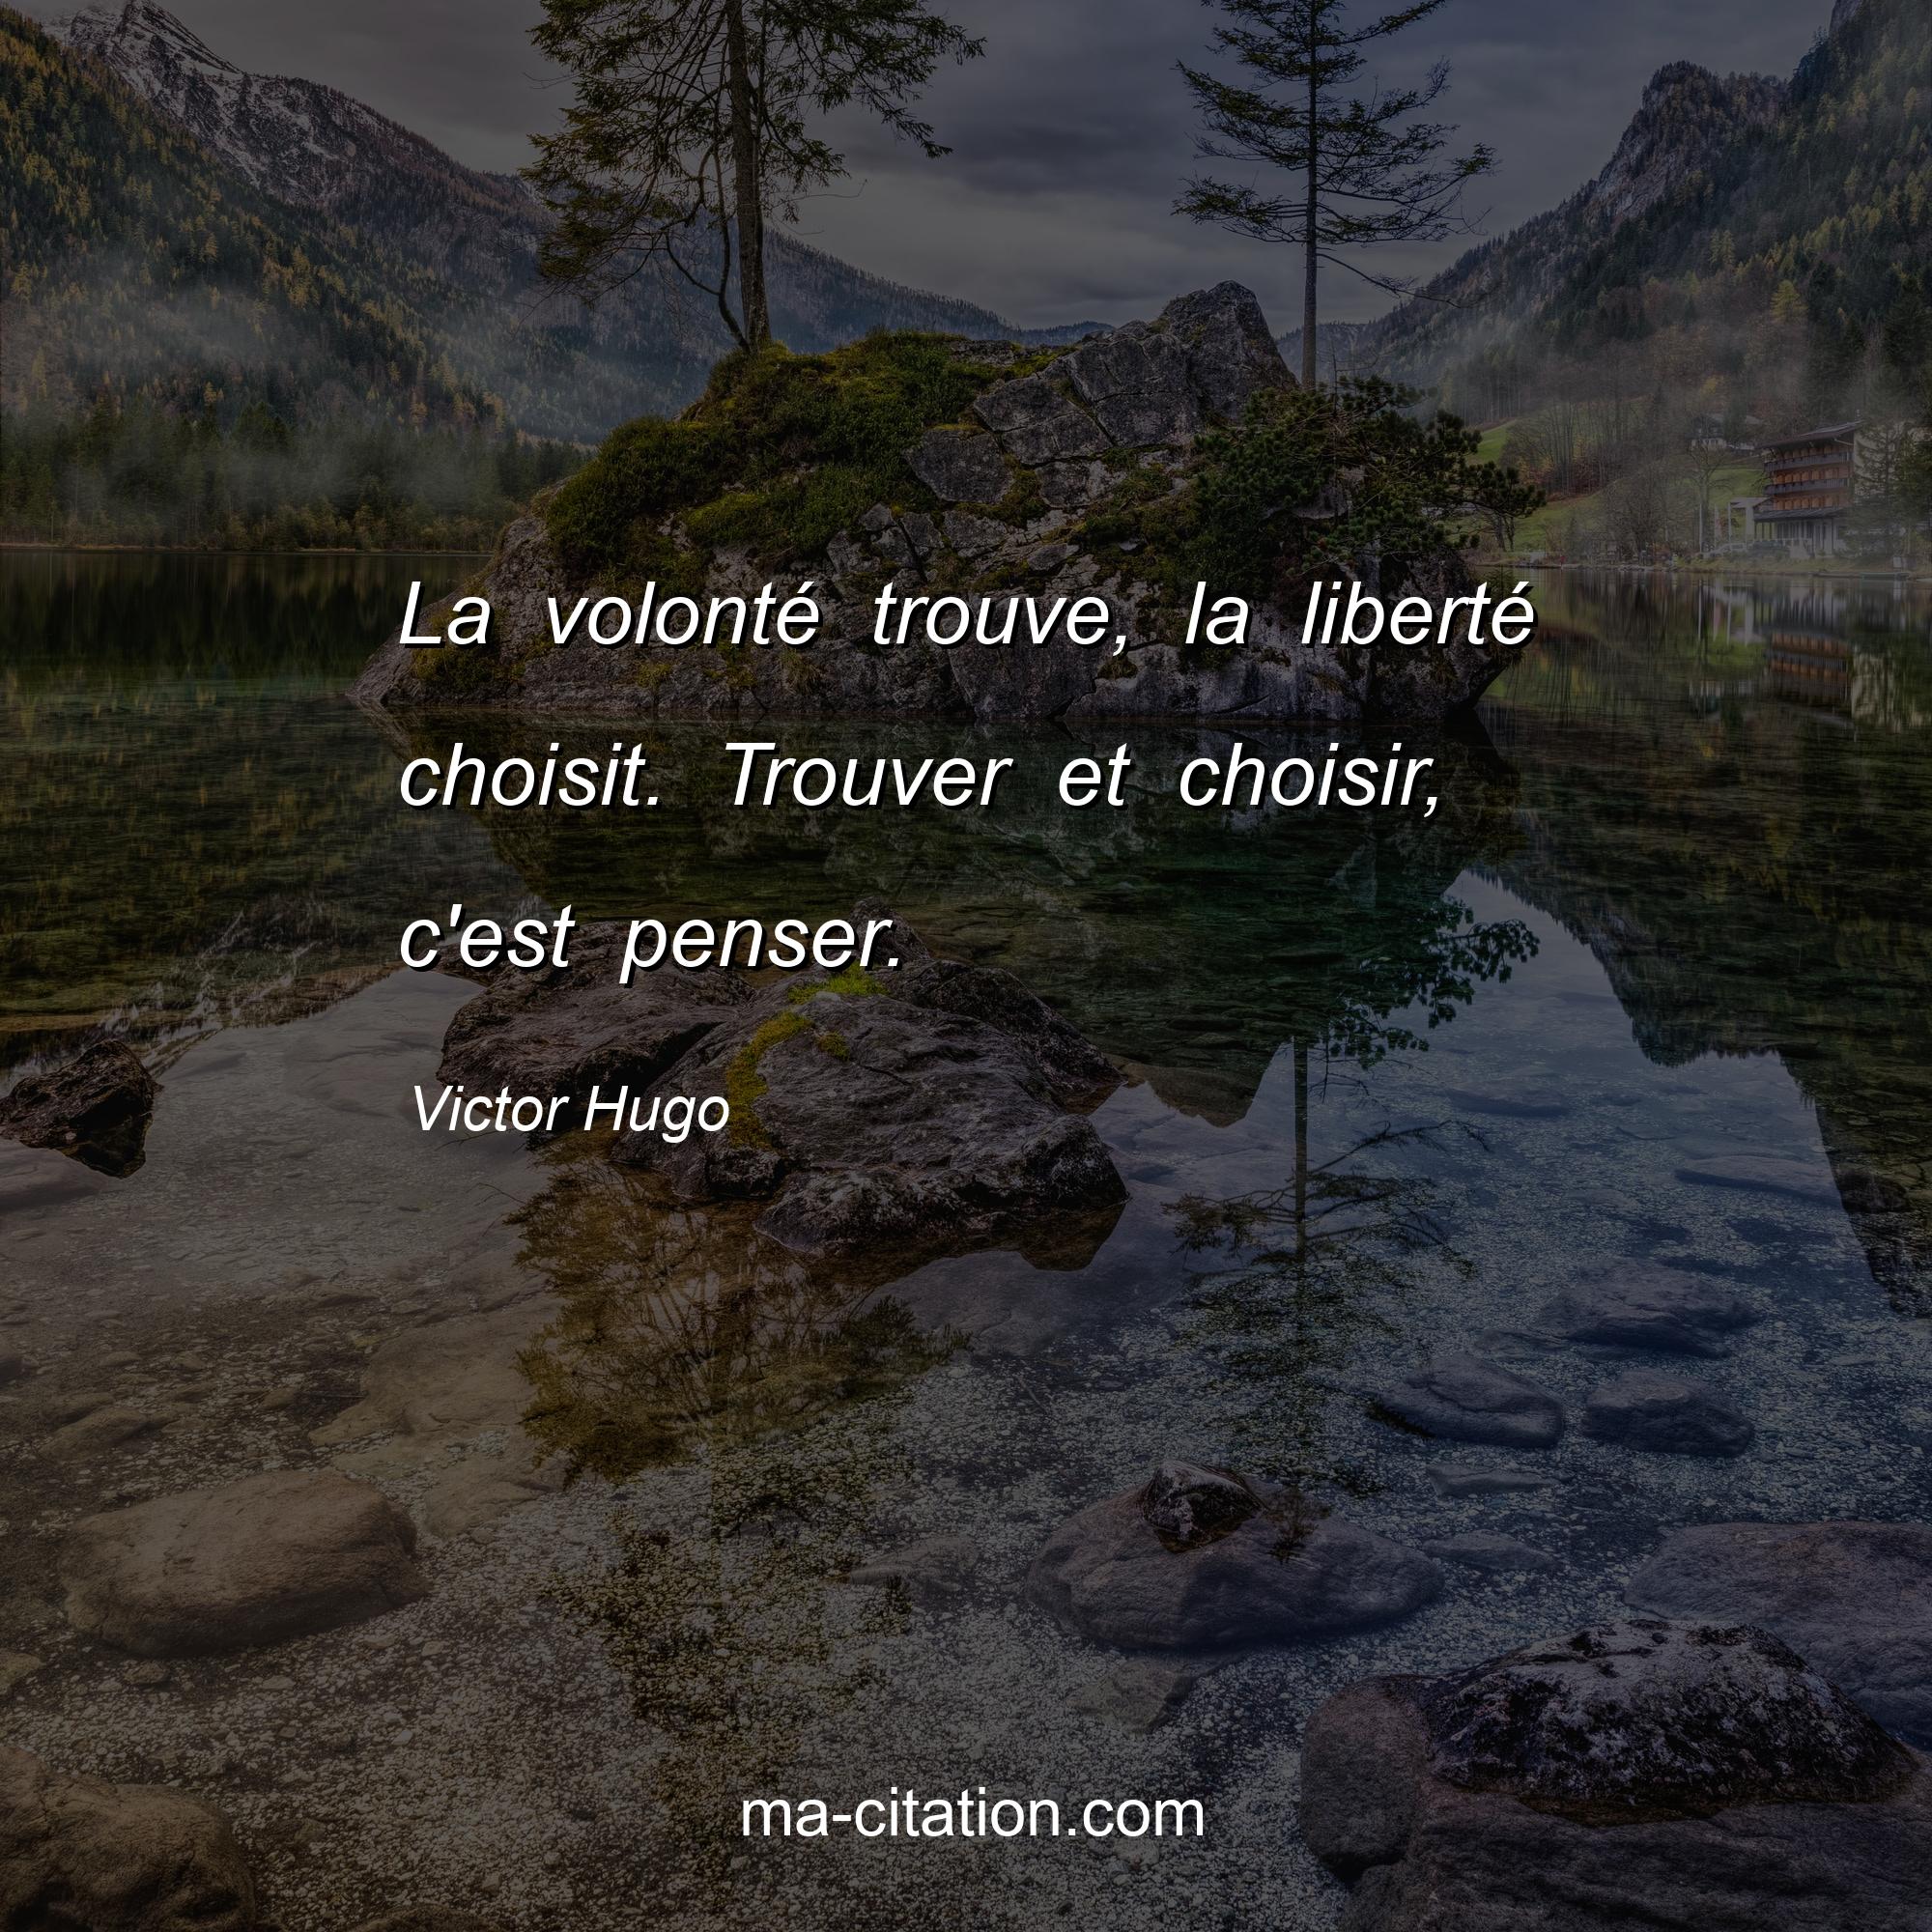 Victor Hugo : La volonté trouve, la liberté choisit. Trouver et choisir, c'est penser.